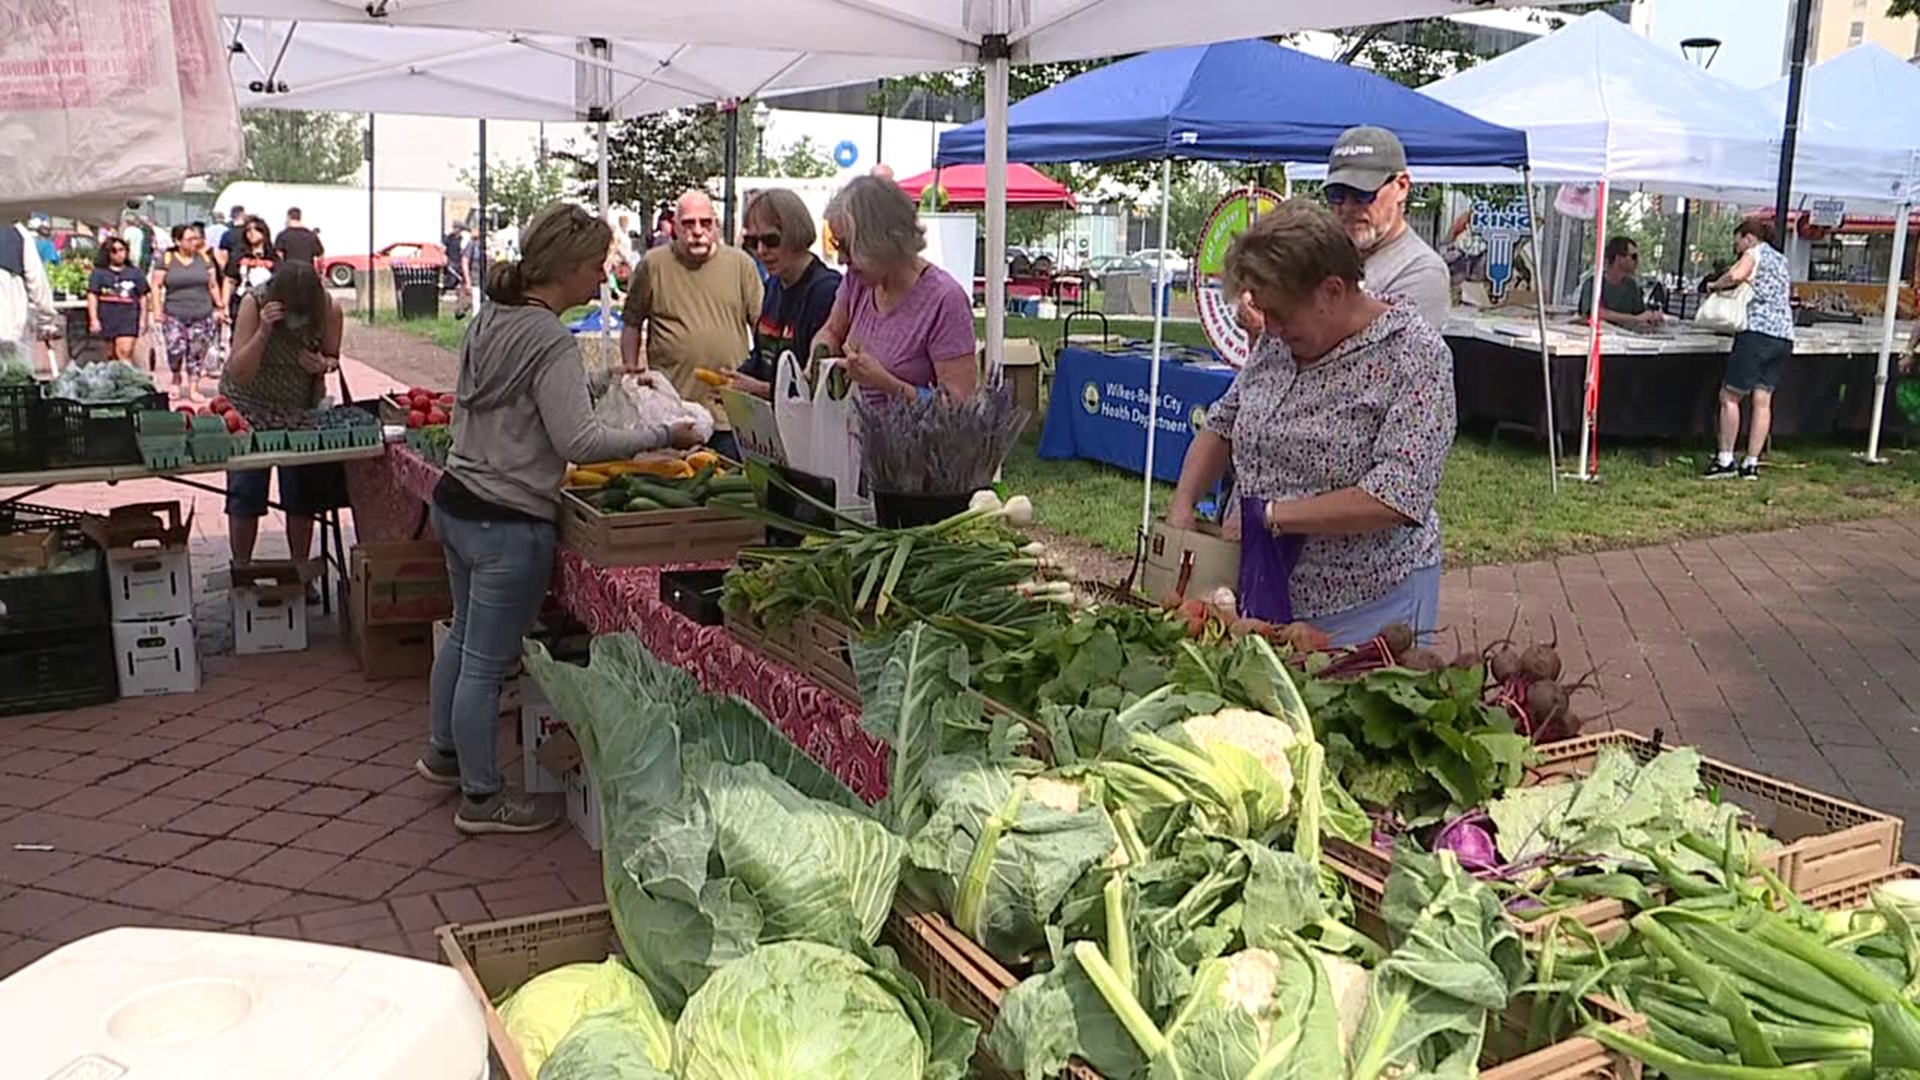 WilkesBarre Farmers Market opens for season